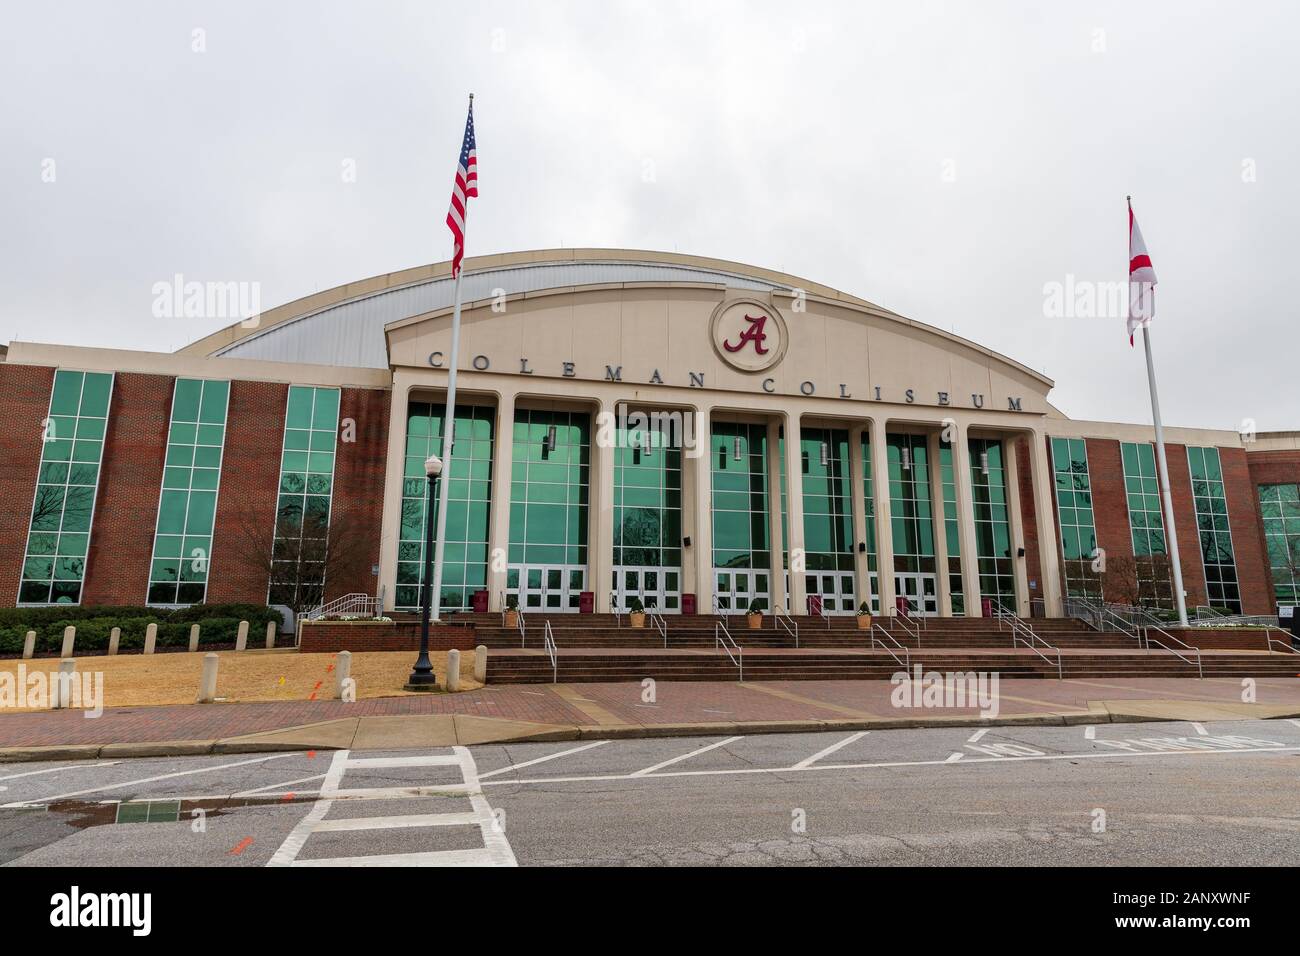 Tuscaloosa, AL / USA - 29 décembre 2019 : Coleman Coliseum sur le campus de l'Université de l'Alabama Banque D'Images